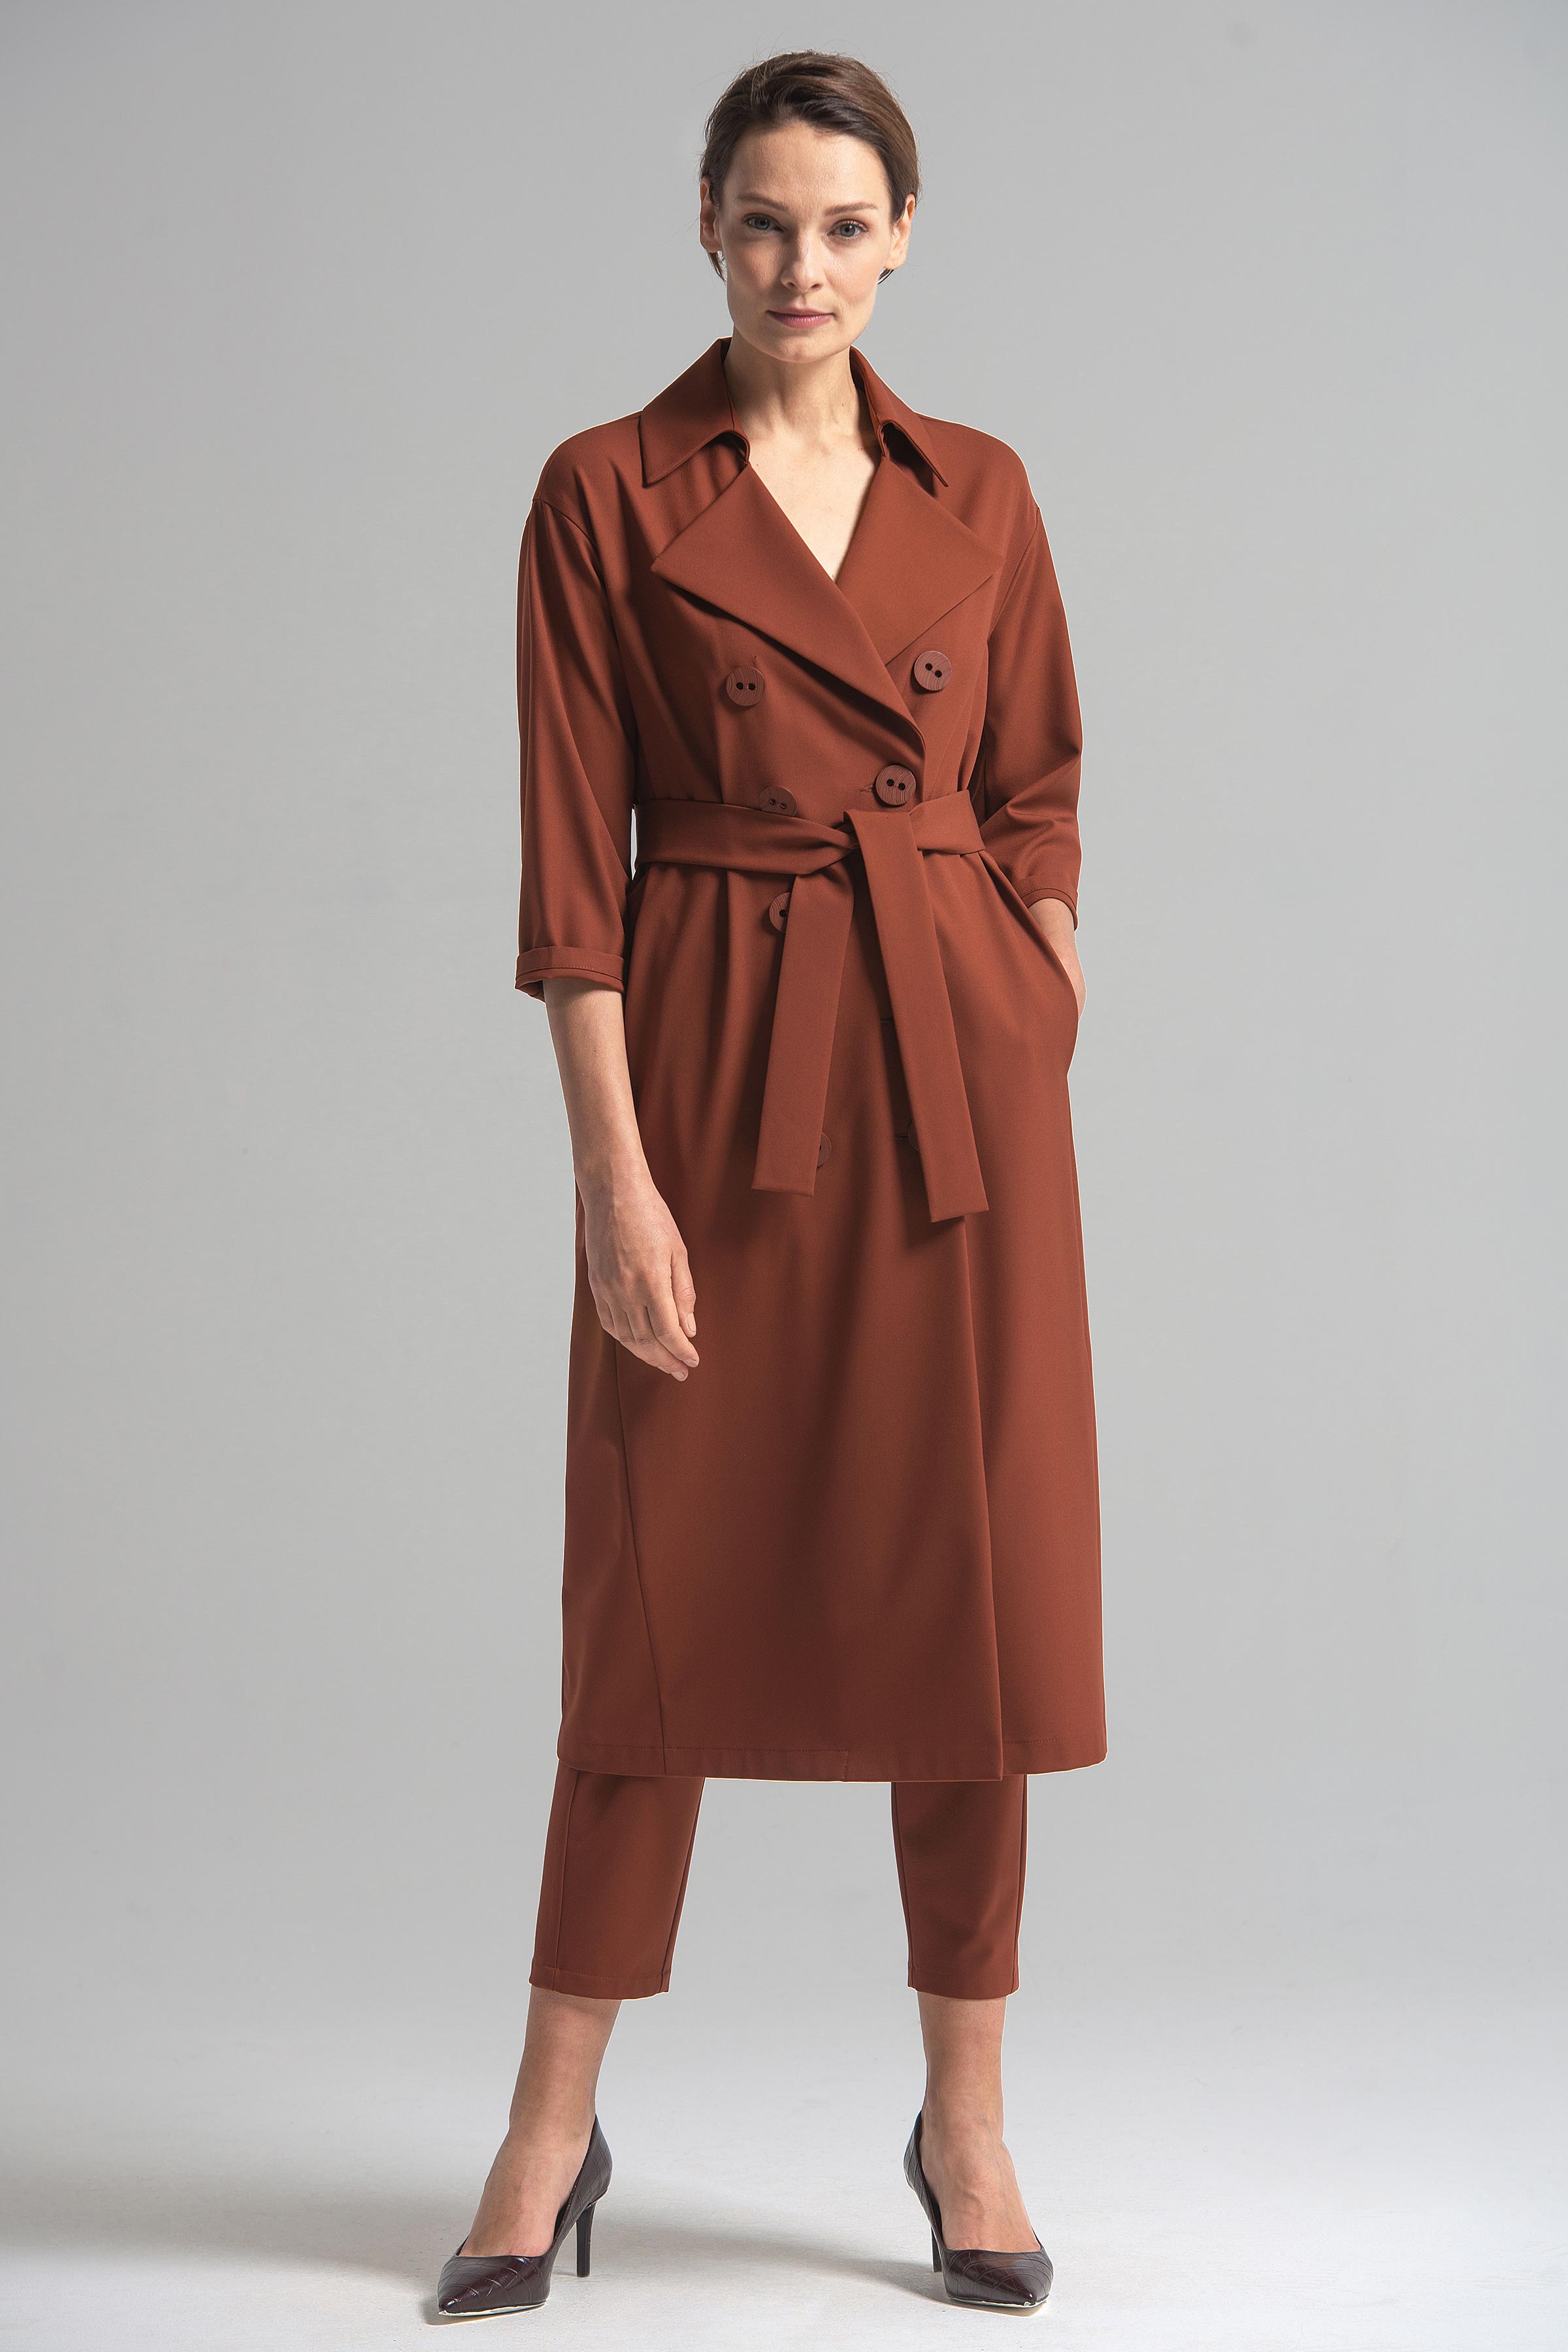 Платье двубортное 94 Красная глина (argile rouger) от Lesel (Лесель)! Заказывайте по ✆ 8 (800) 777 02 37